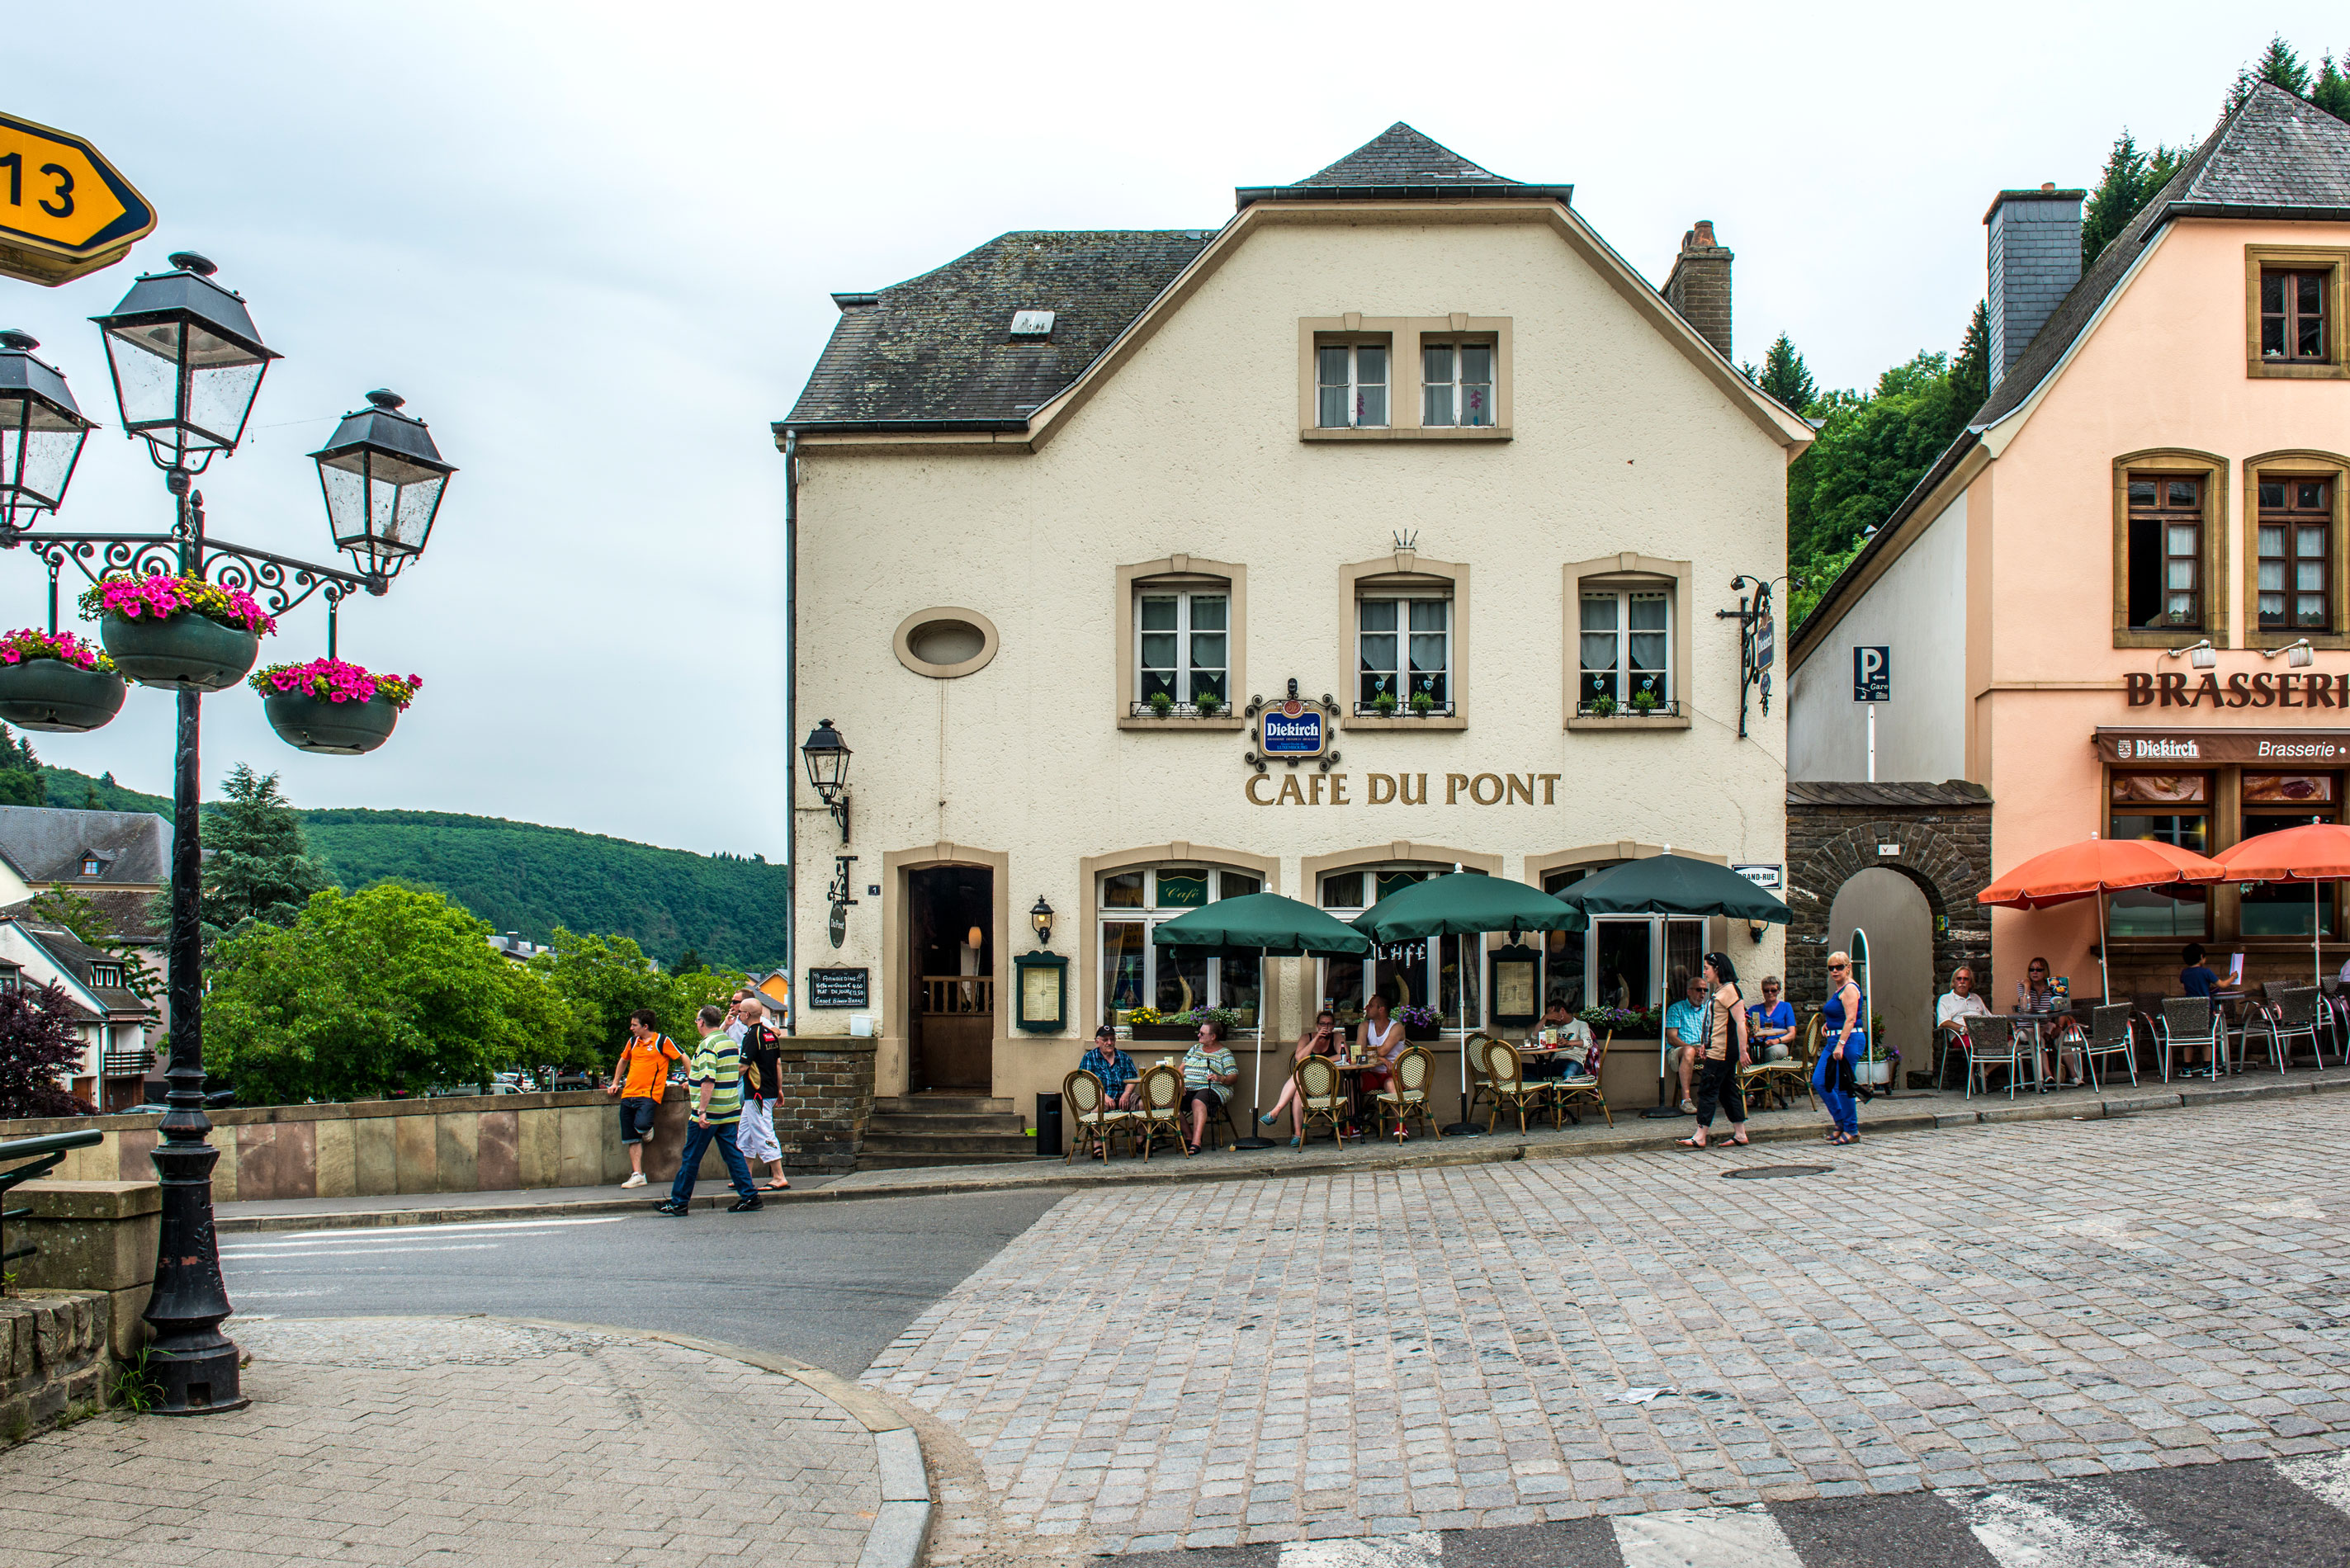 Bienvenue sur le site de café-restaurant le plus adorable du Luxembourg.